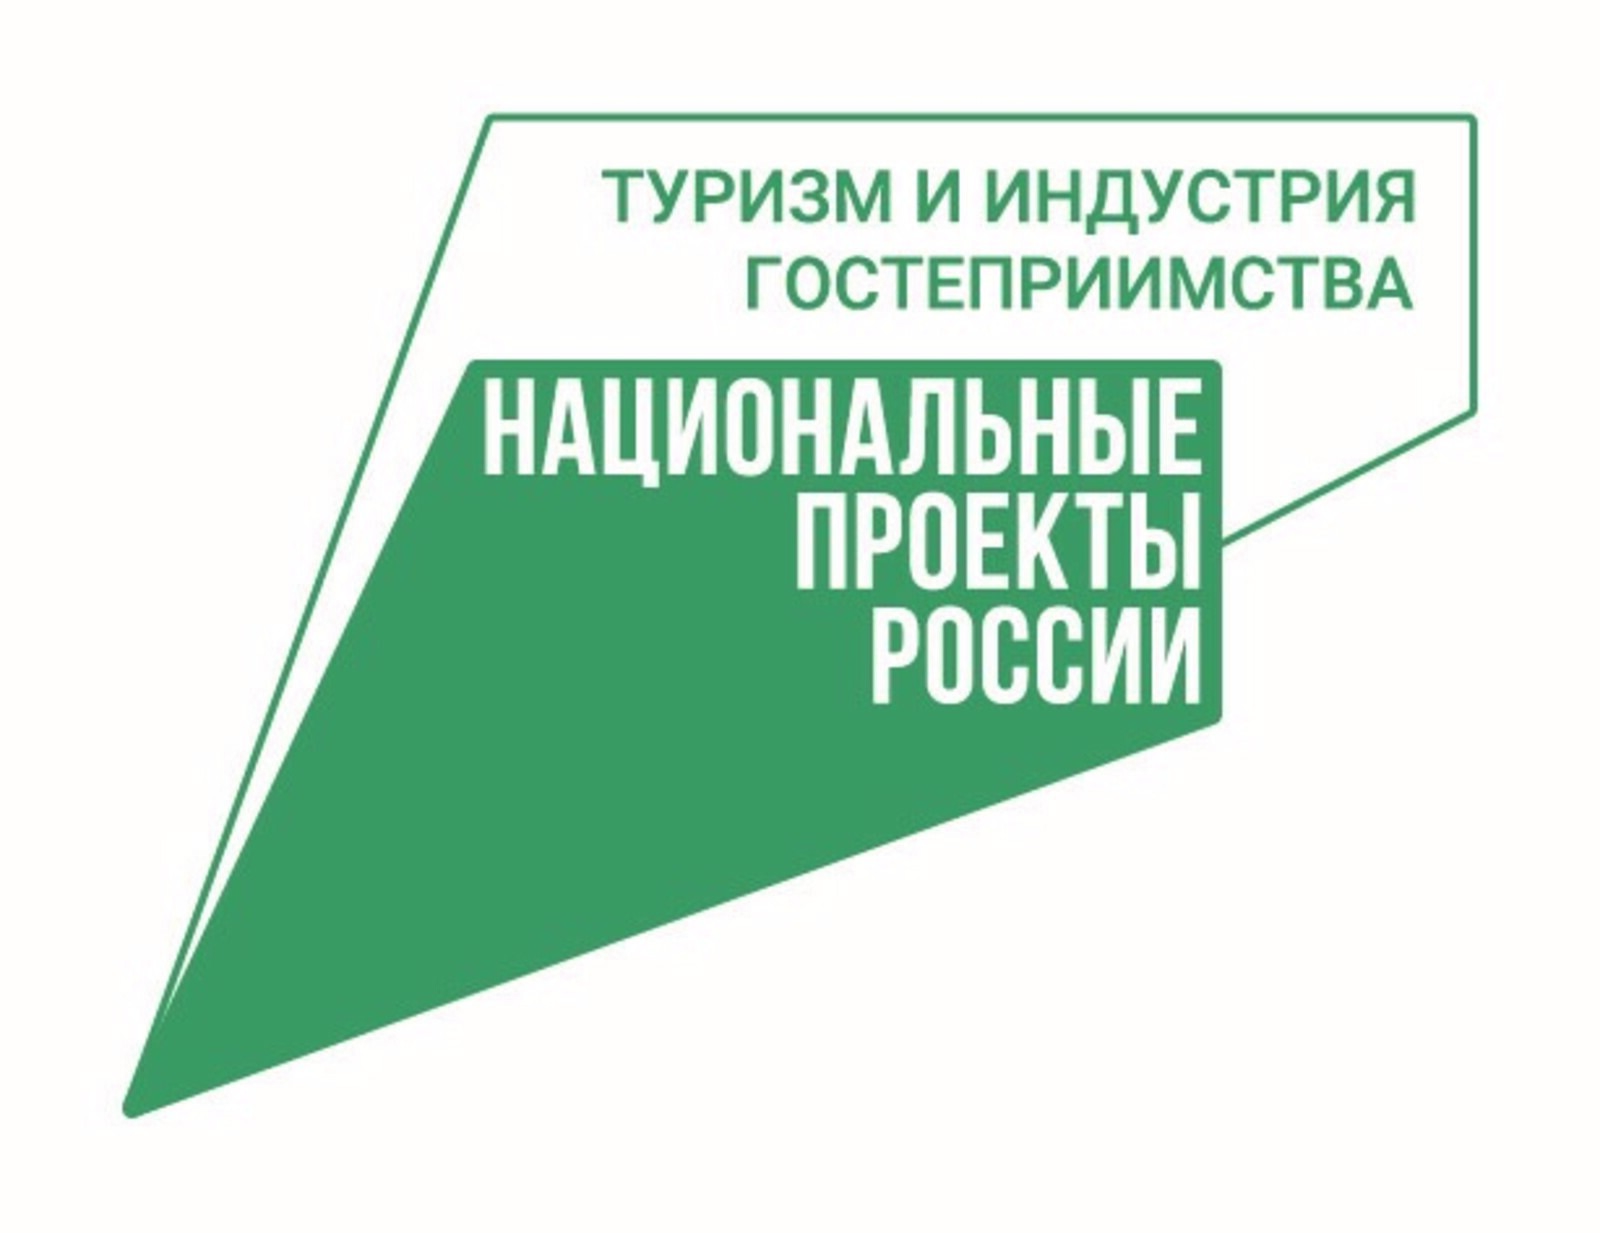 19 декабря главной на выставке-форуме «Россия»  станет Вологодская область.